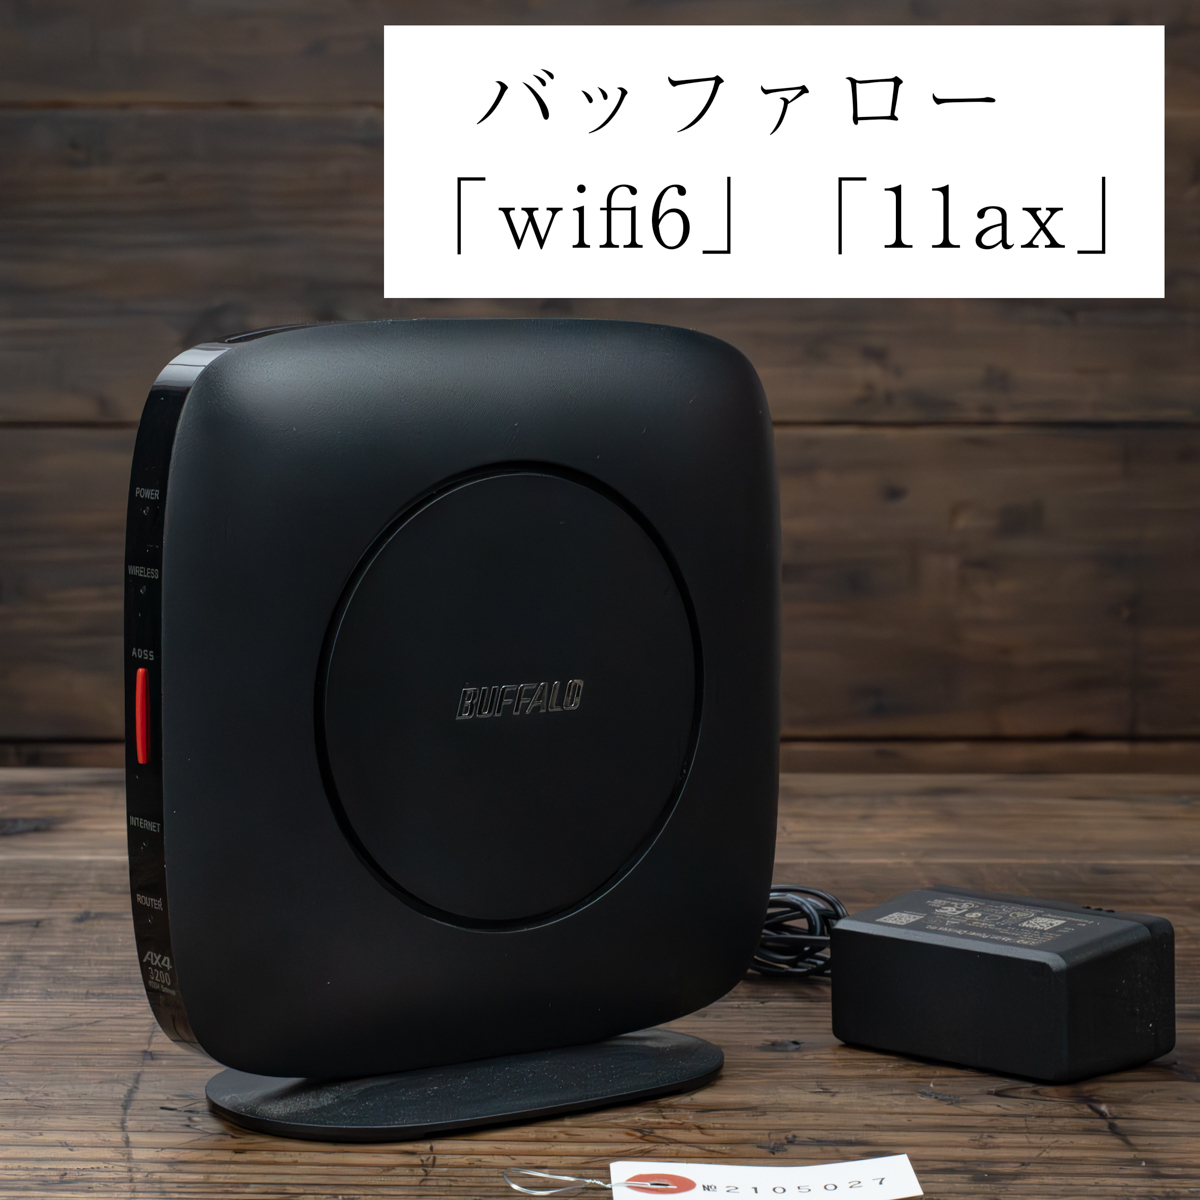 【状態良好】ゲーム用Wi-Fi バッファロー WiFi ルーター 1円 無線LAN Wi-Fi 6 11ax / 11ac AX3200 ワイファイ 2401+800Mbpsの画像1